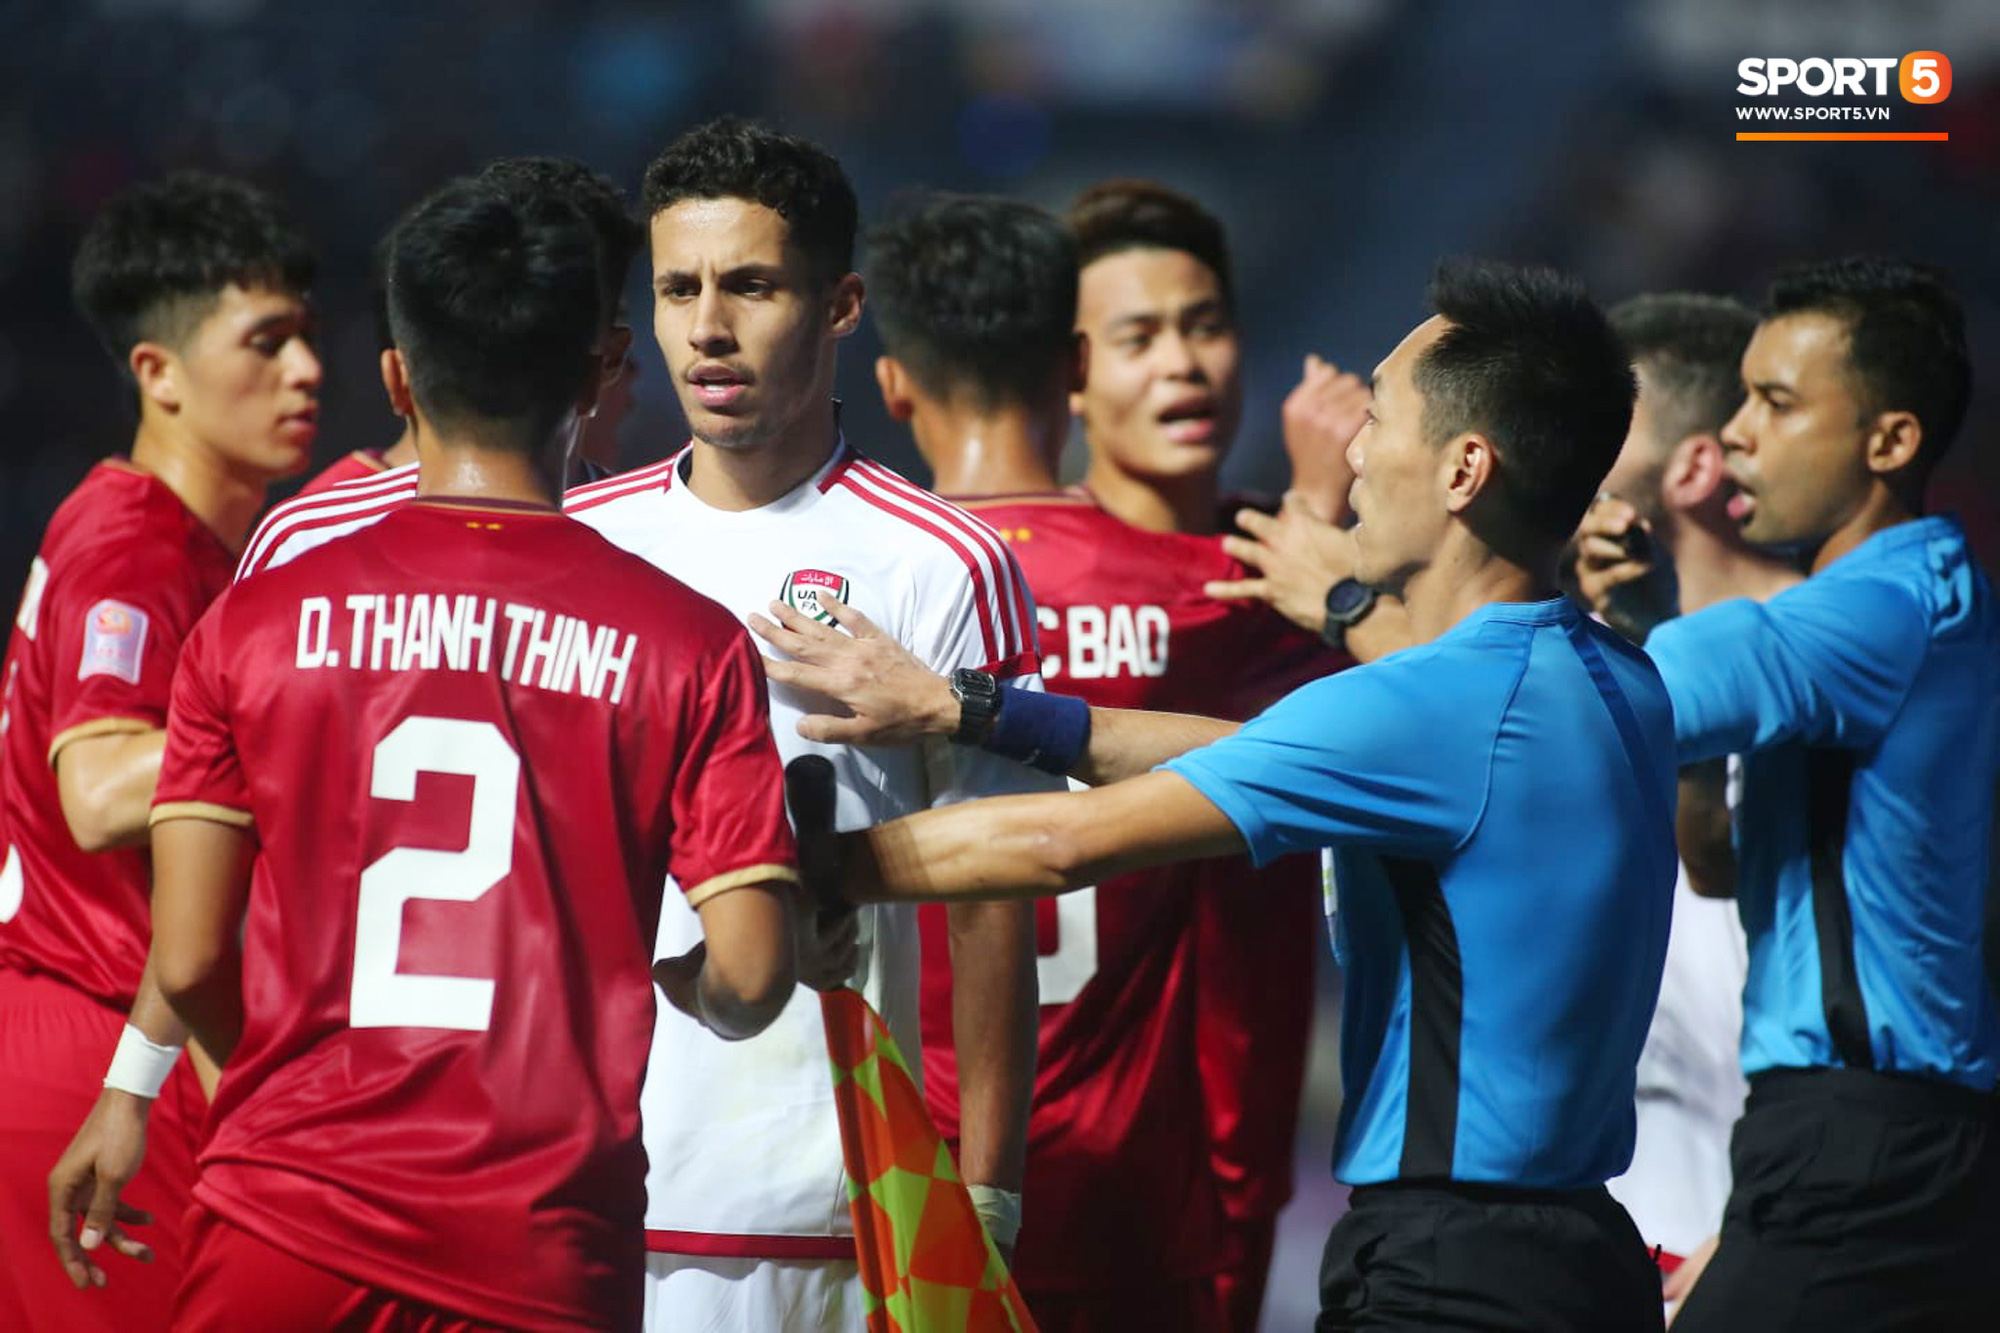 Cận cảnh Quang Hải bị cầu thủ U23 UAE đạp chân nguy hiểm từ phía sau, suýt gặp chấn thương nặng  - Ảnh 1.